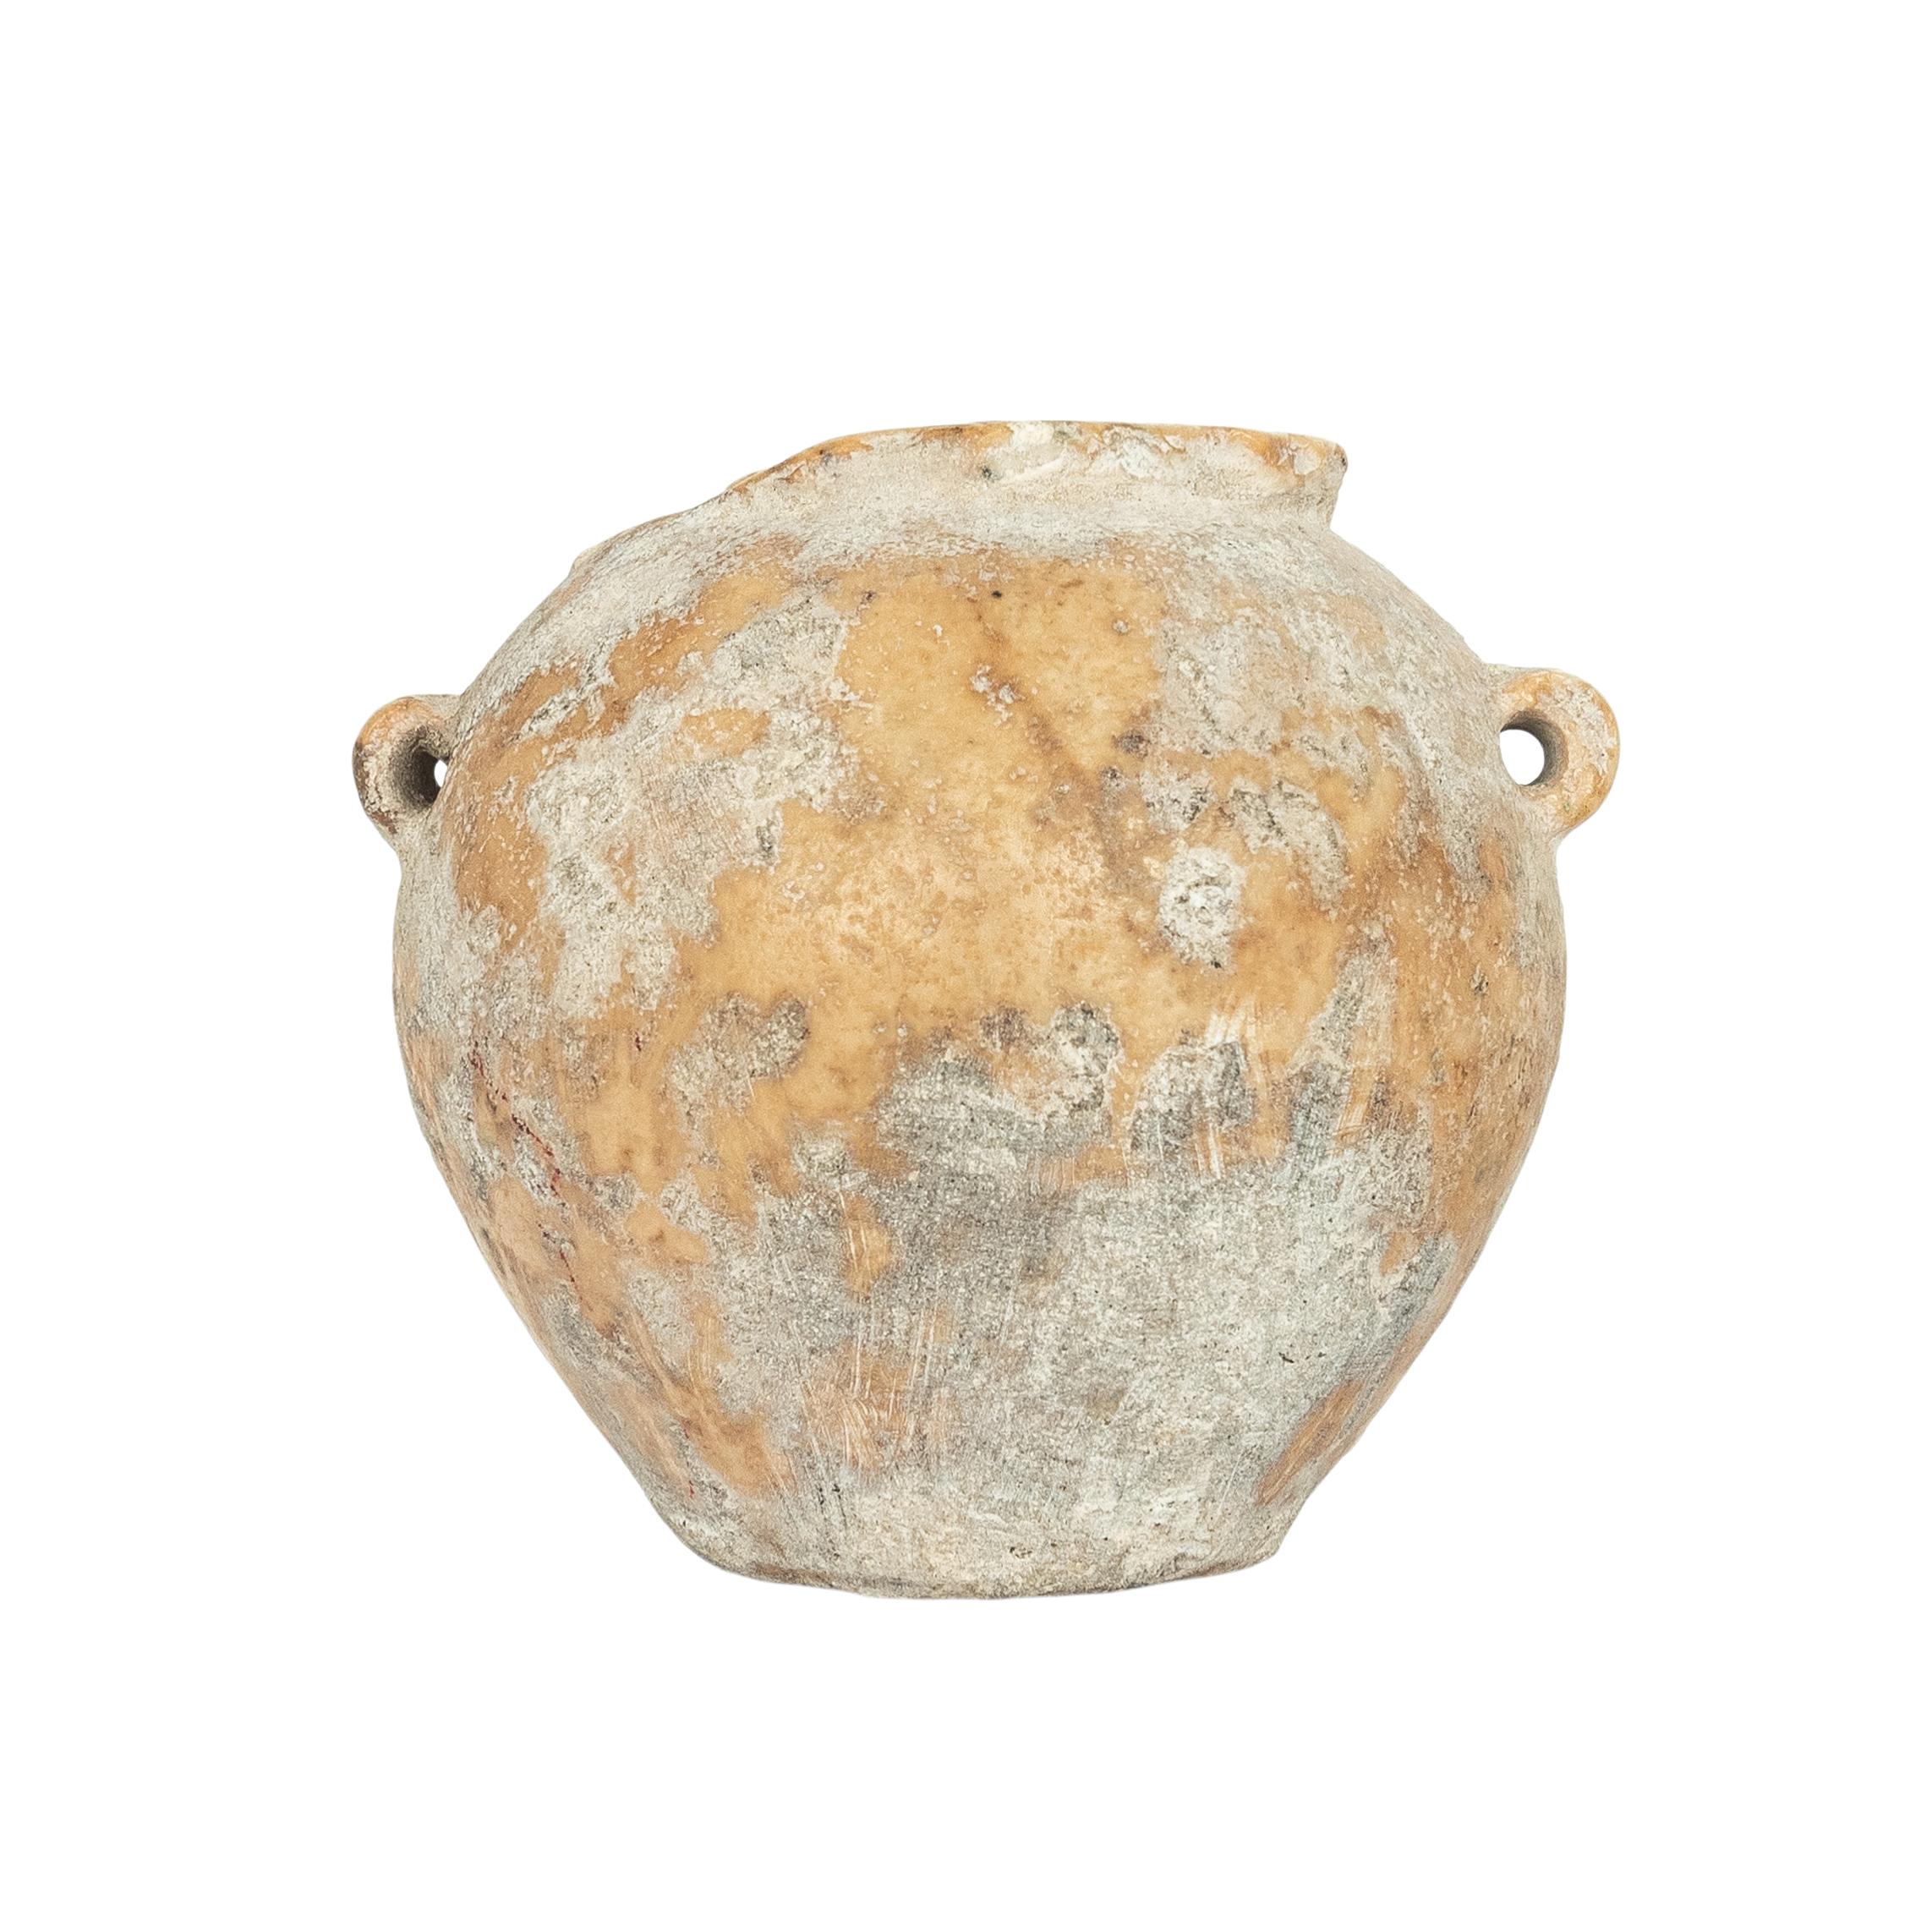 Archaïque Ancienne Égypte Ancien Empire Miniature A Stone Vessel Jar 2600-2800 BCE